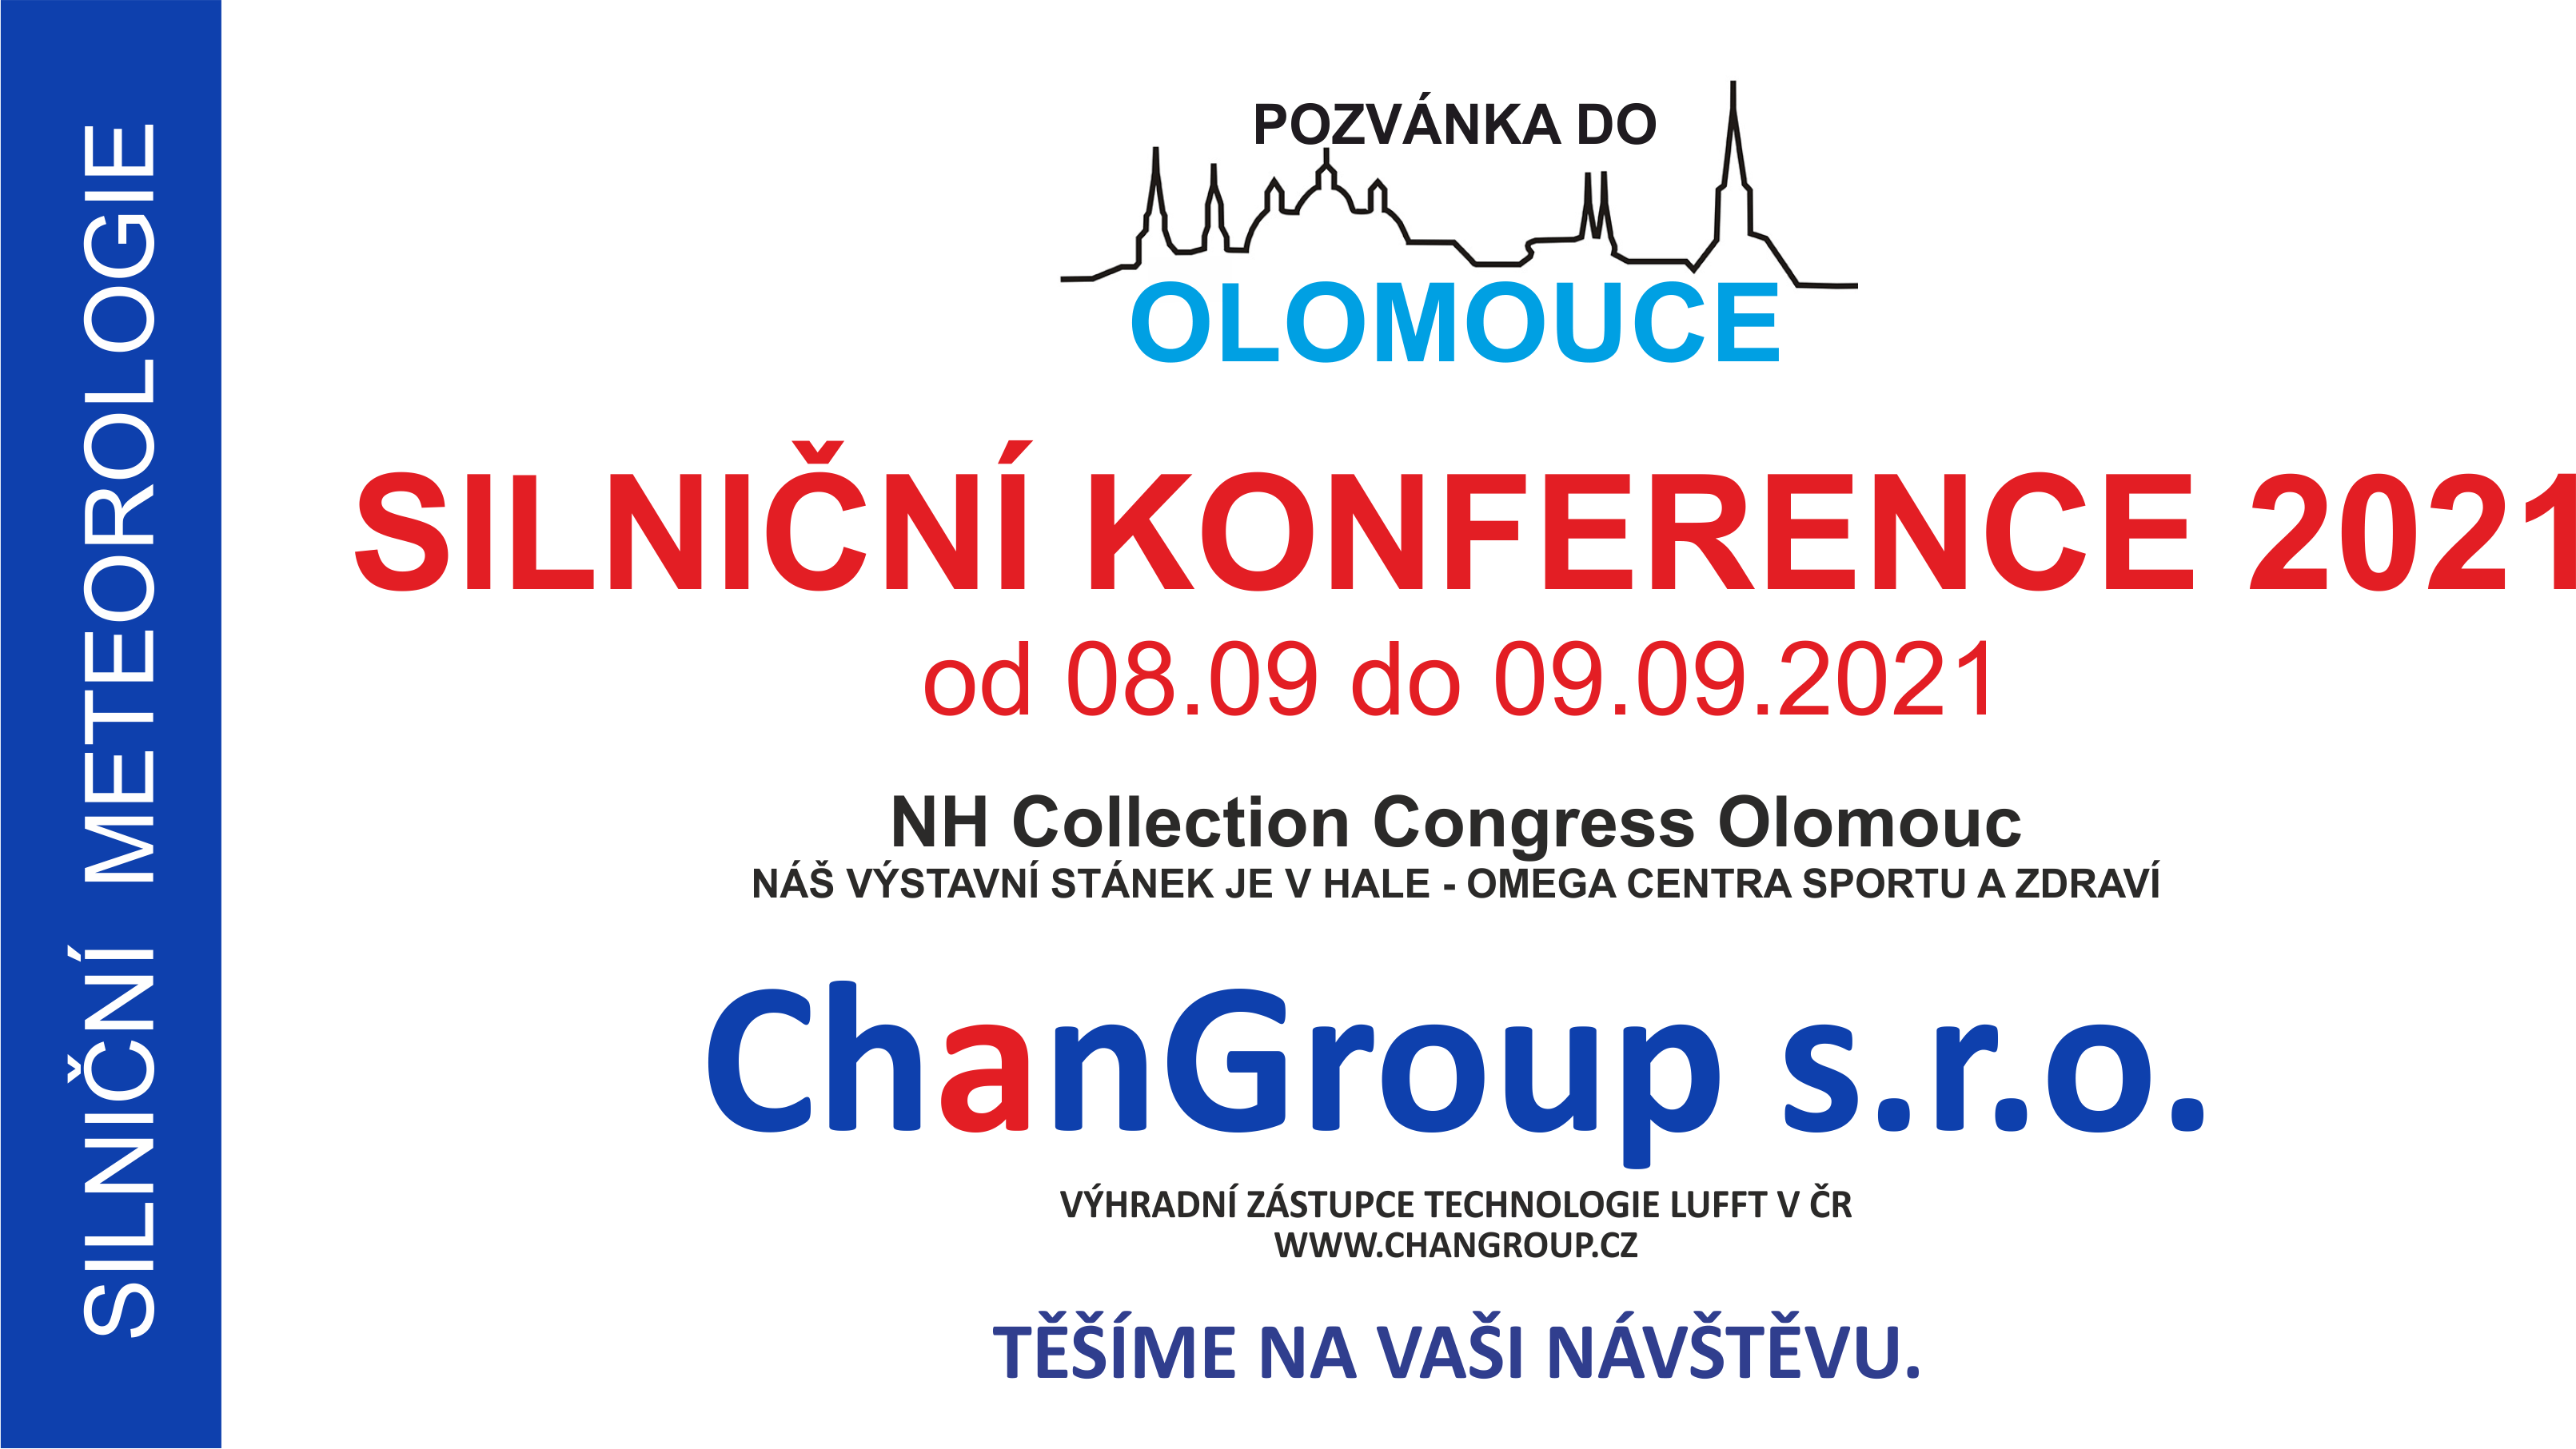 Pozvánka na Silniční konferenci v Olomouci 2021